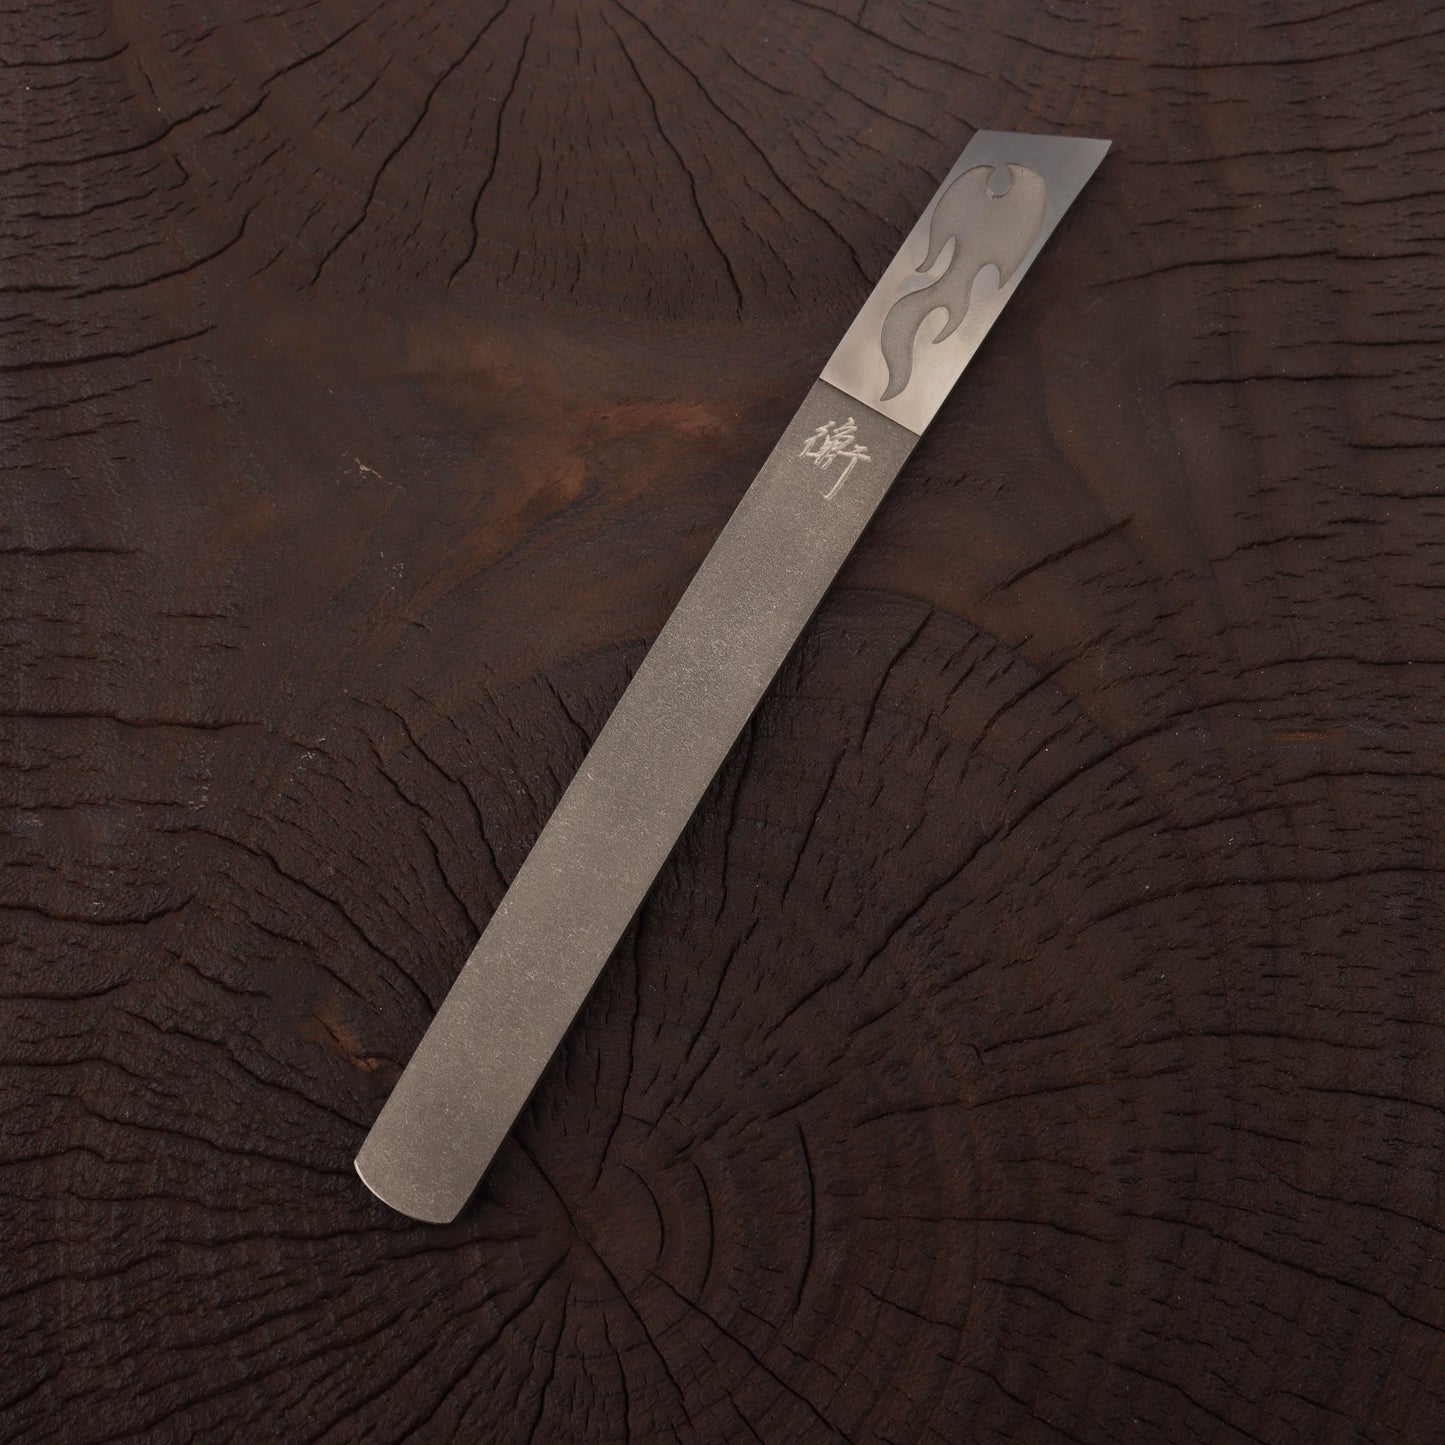 Zen-Wu Marking Knife